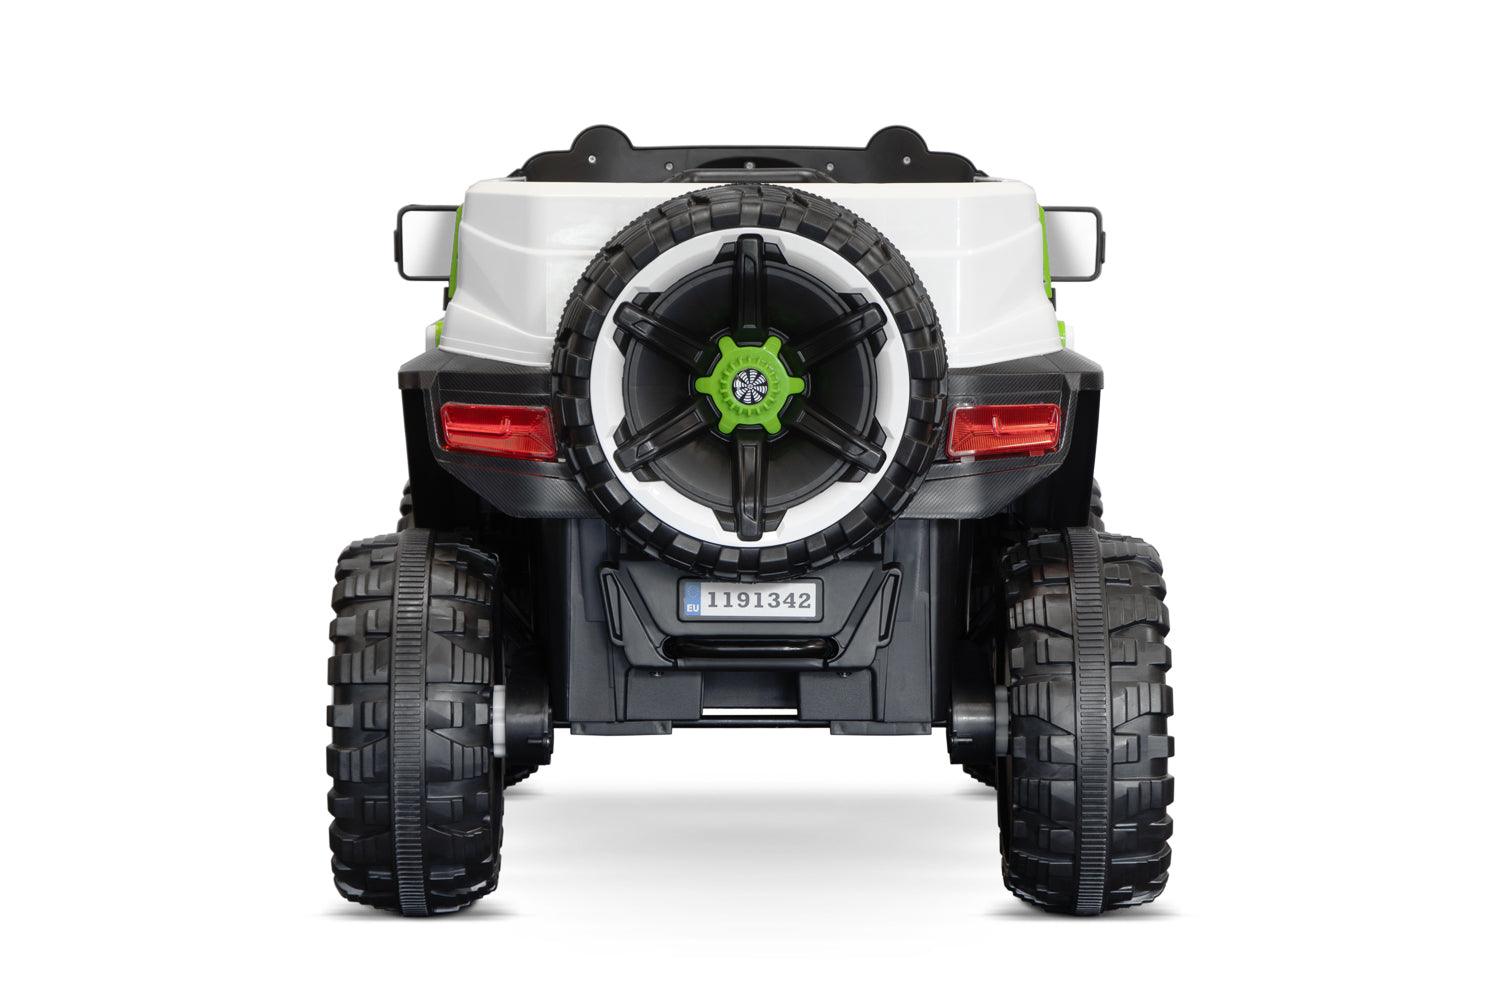 Elektro Kinderauto SUV Ultimate UTV Allrad: Ein Offroad-Abenteuer für Kinder! - kidsdrive.net - Rideonkidcar - Elektroauto für Kinder - Geschenkidee - Kinderfahrzeug